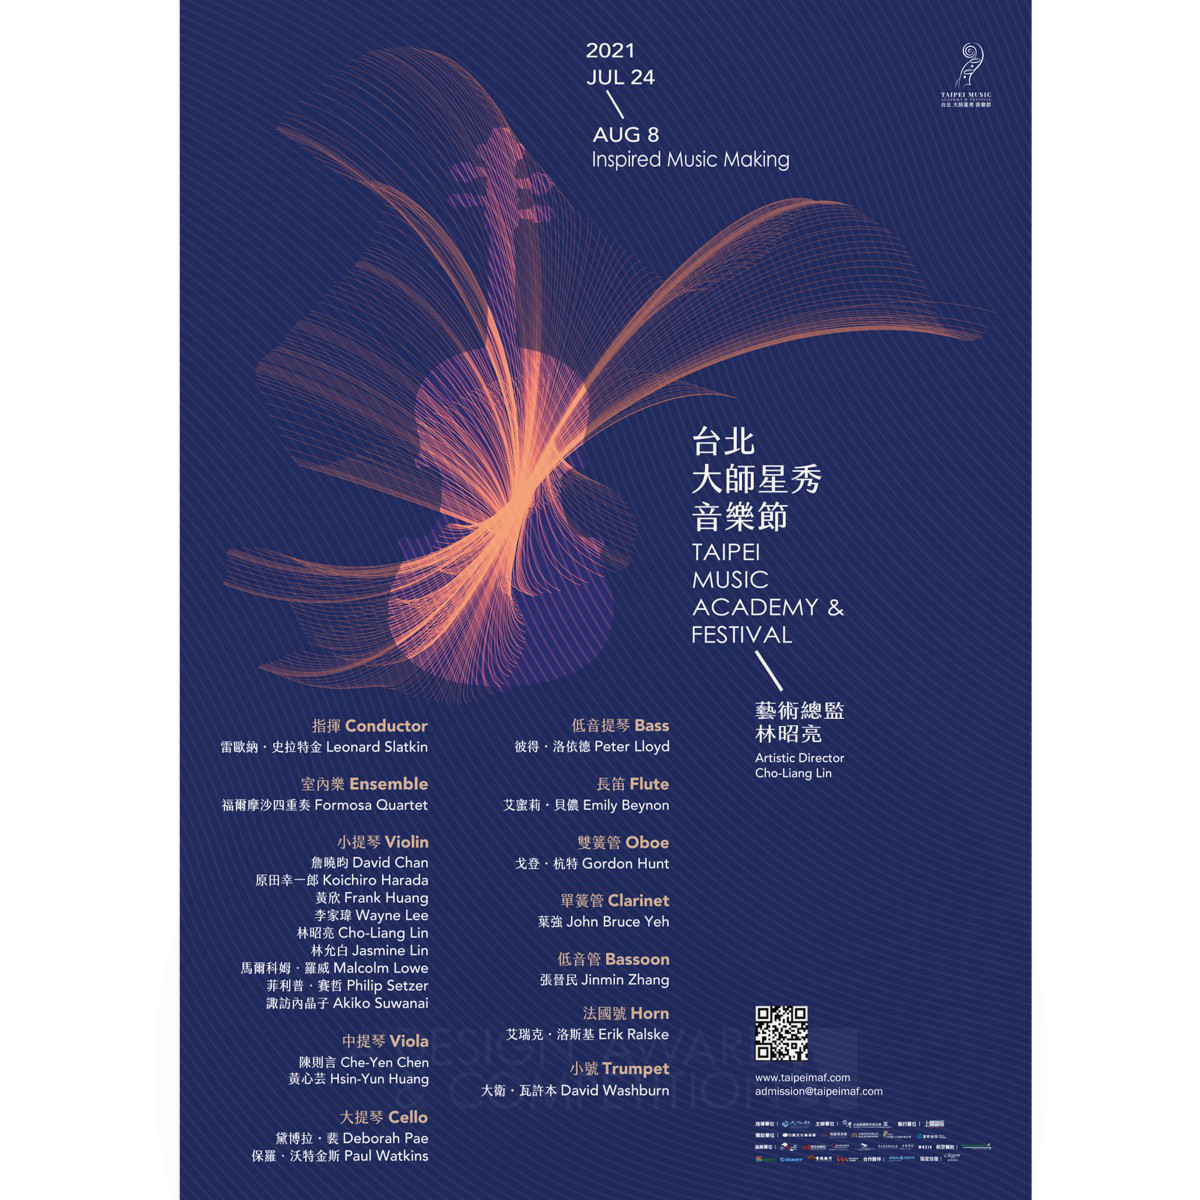 Le Phoenix : Un Poster Unique pour le Festival de Musique et l'Académie de Taipei